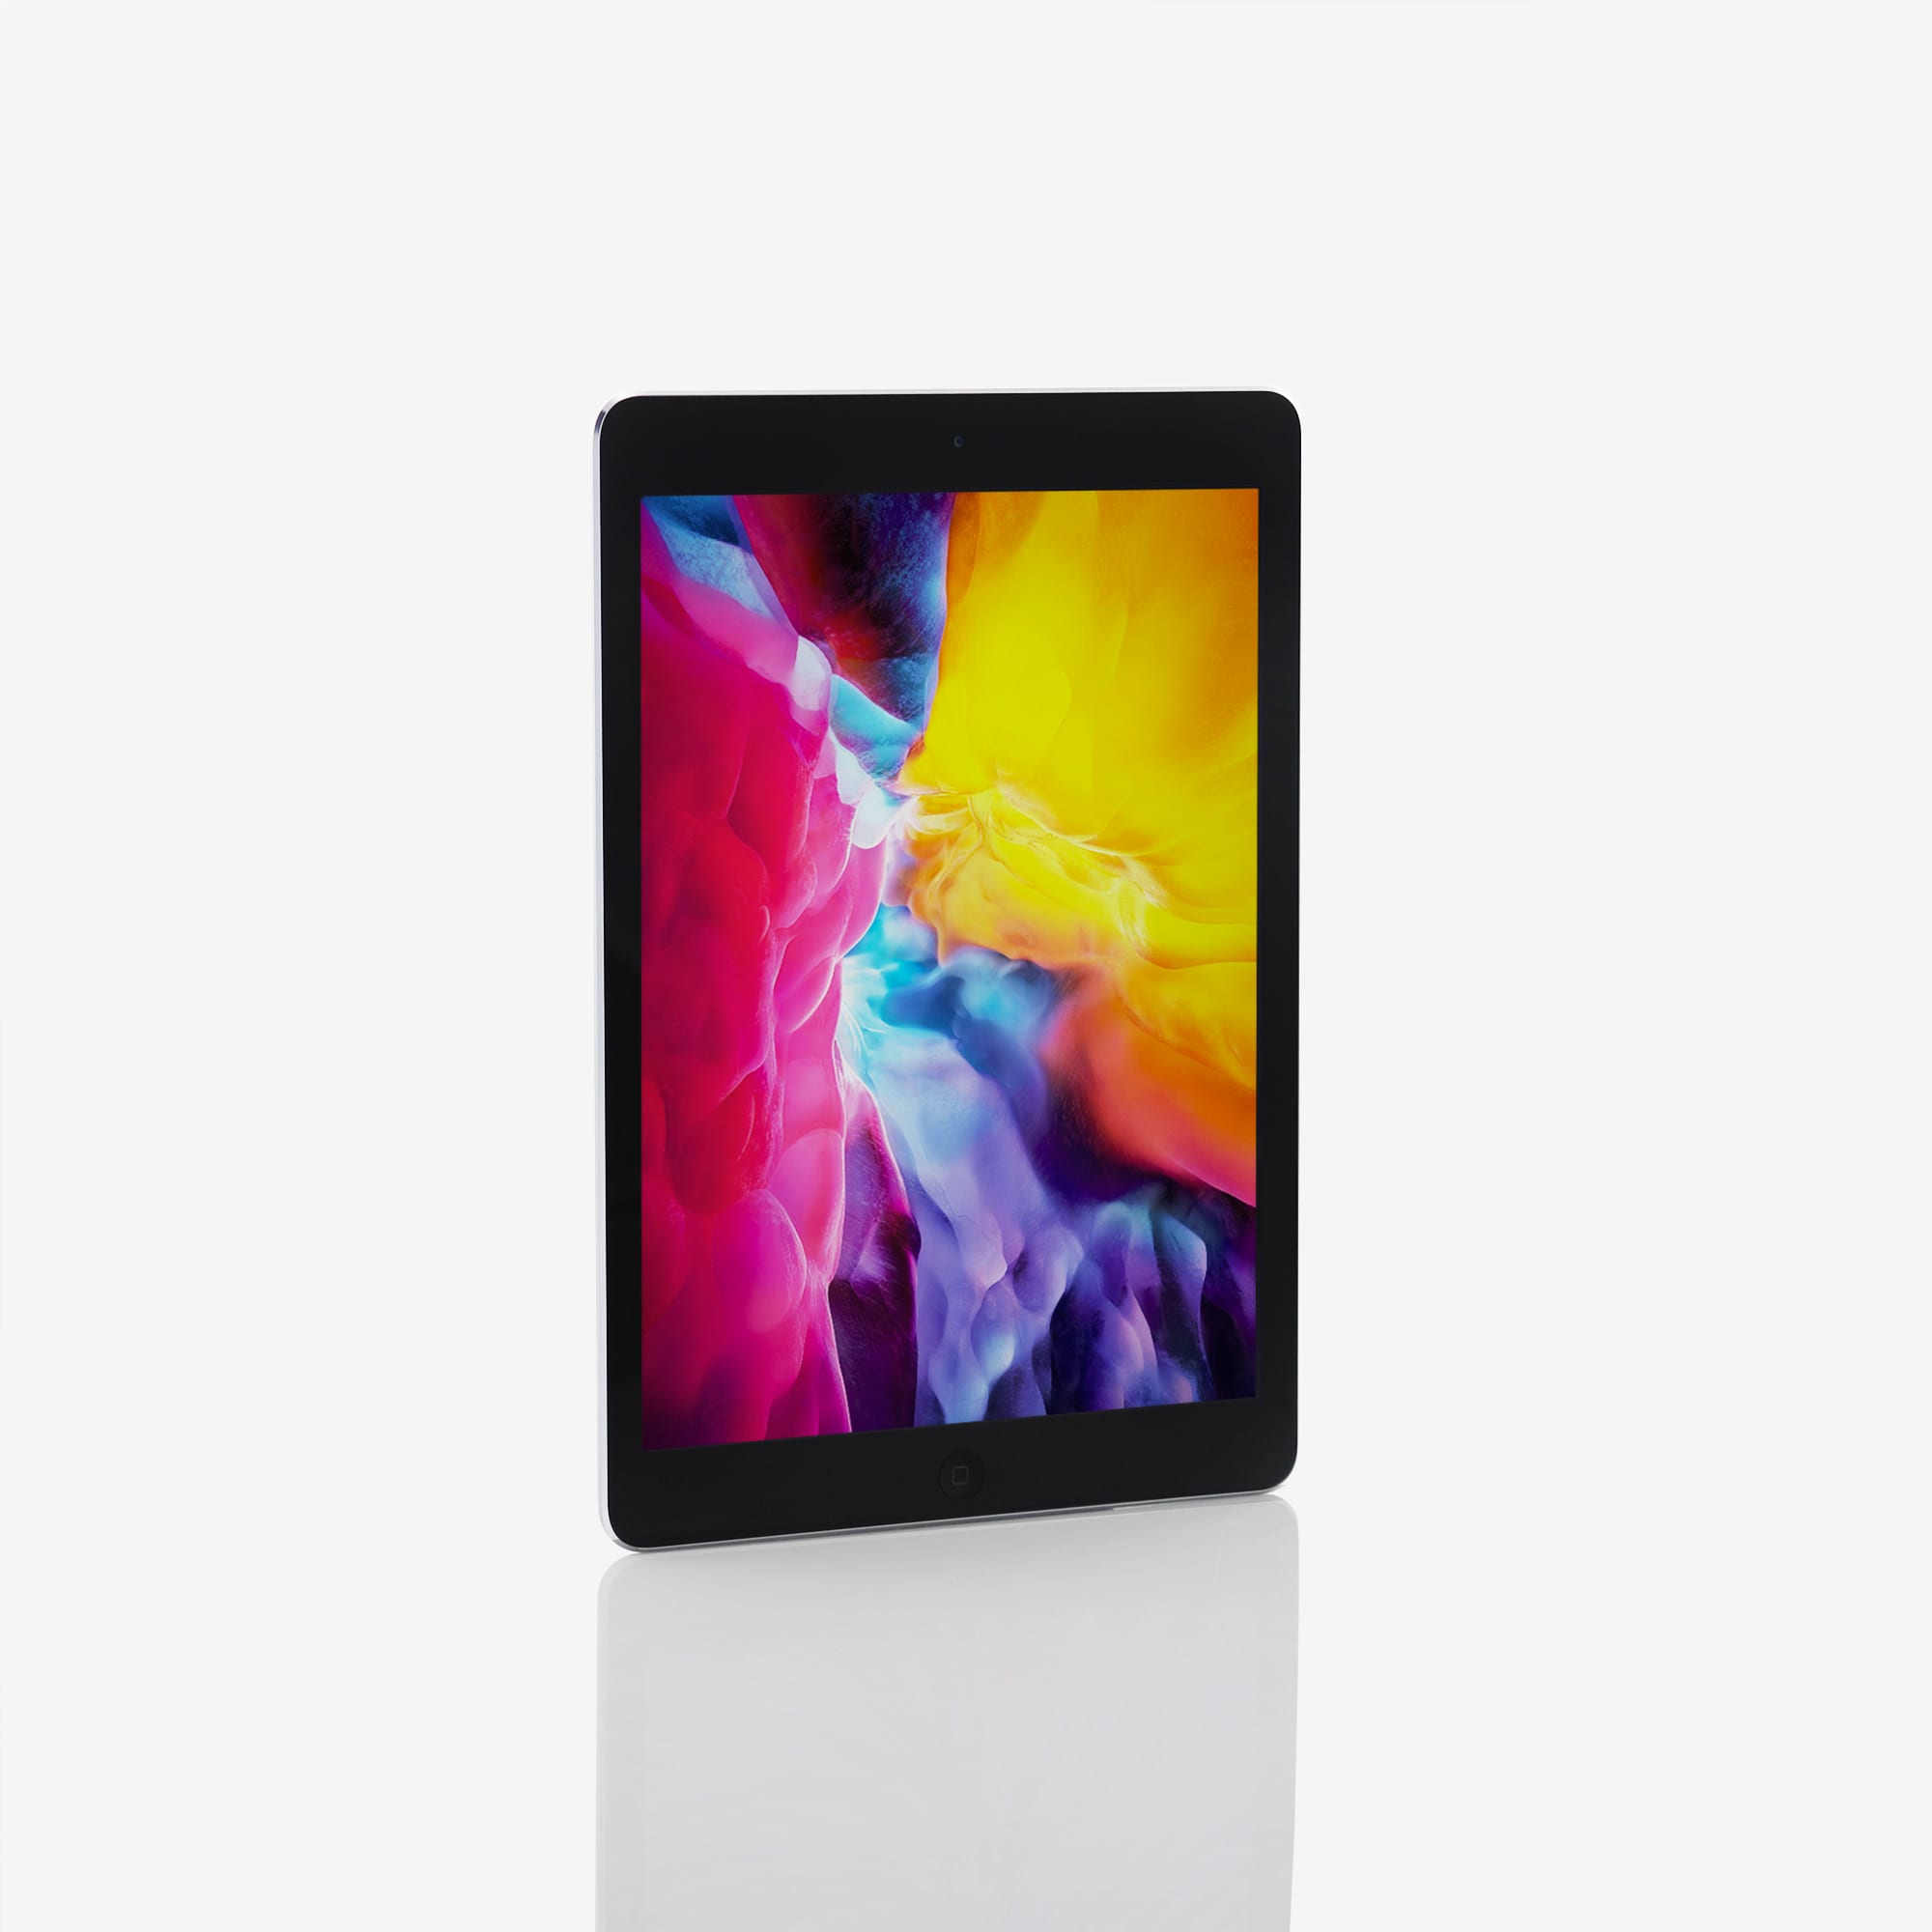 1 x iPad Air (Wi-Fi) Space Grey (2013)